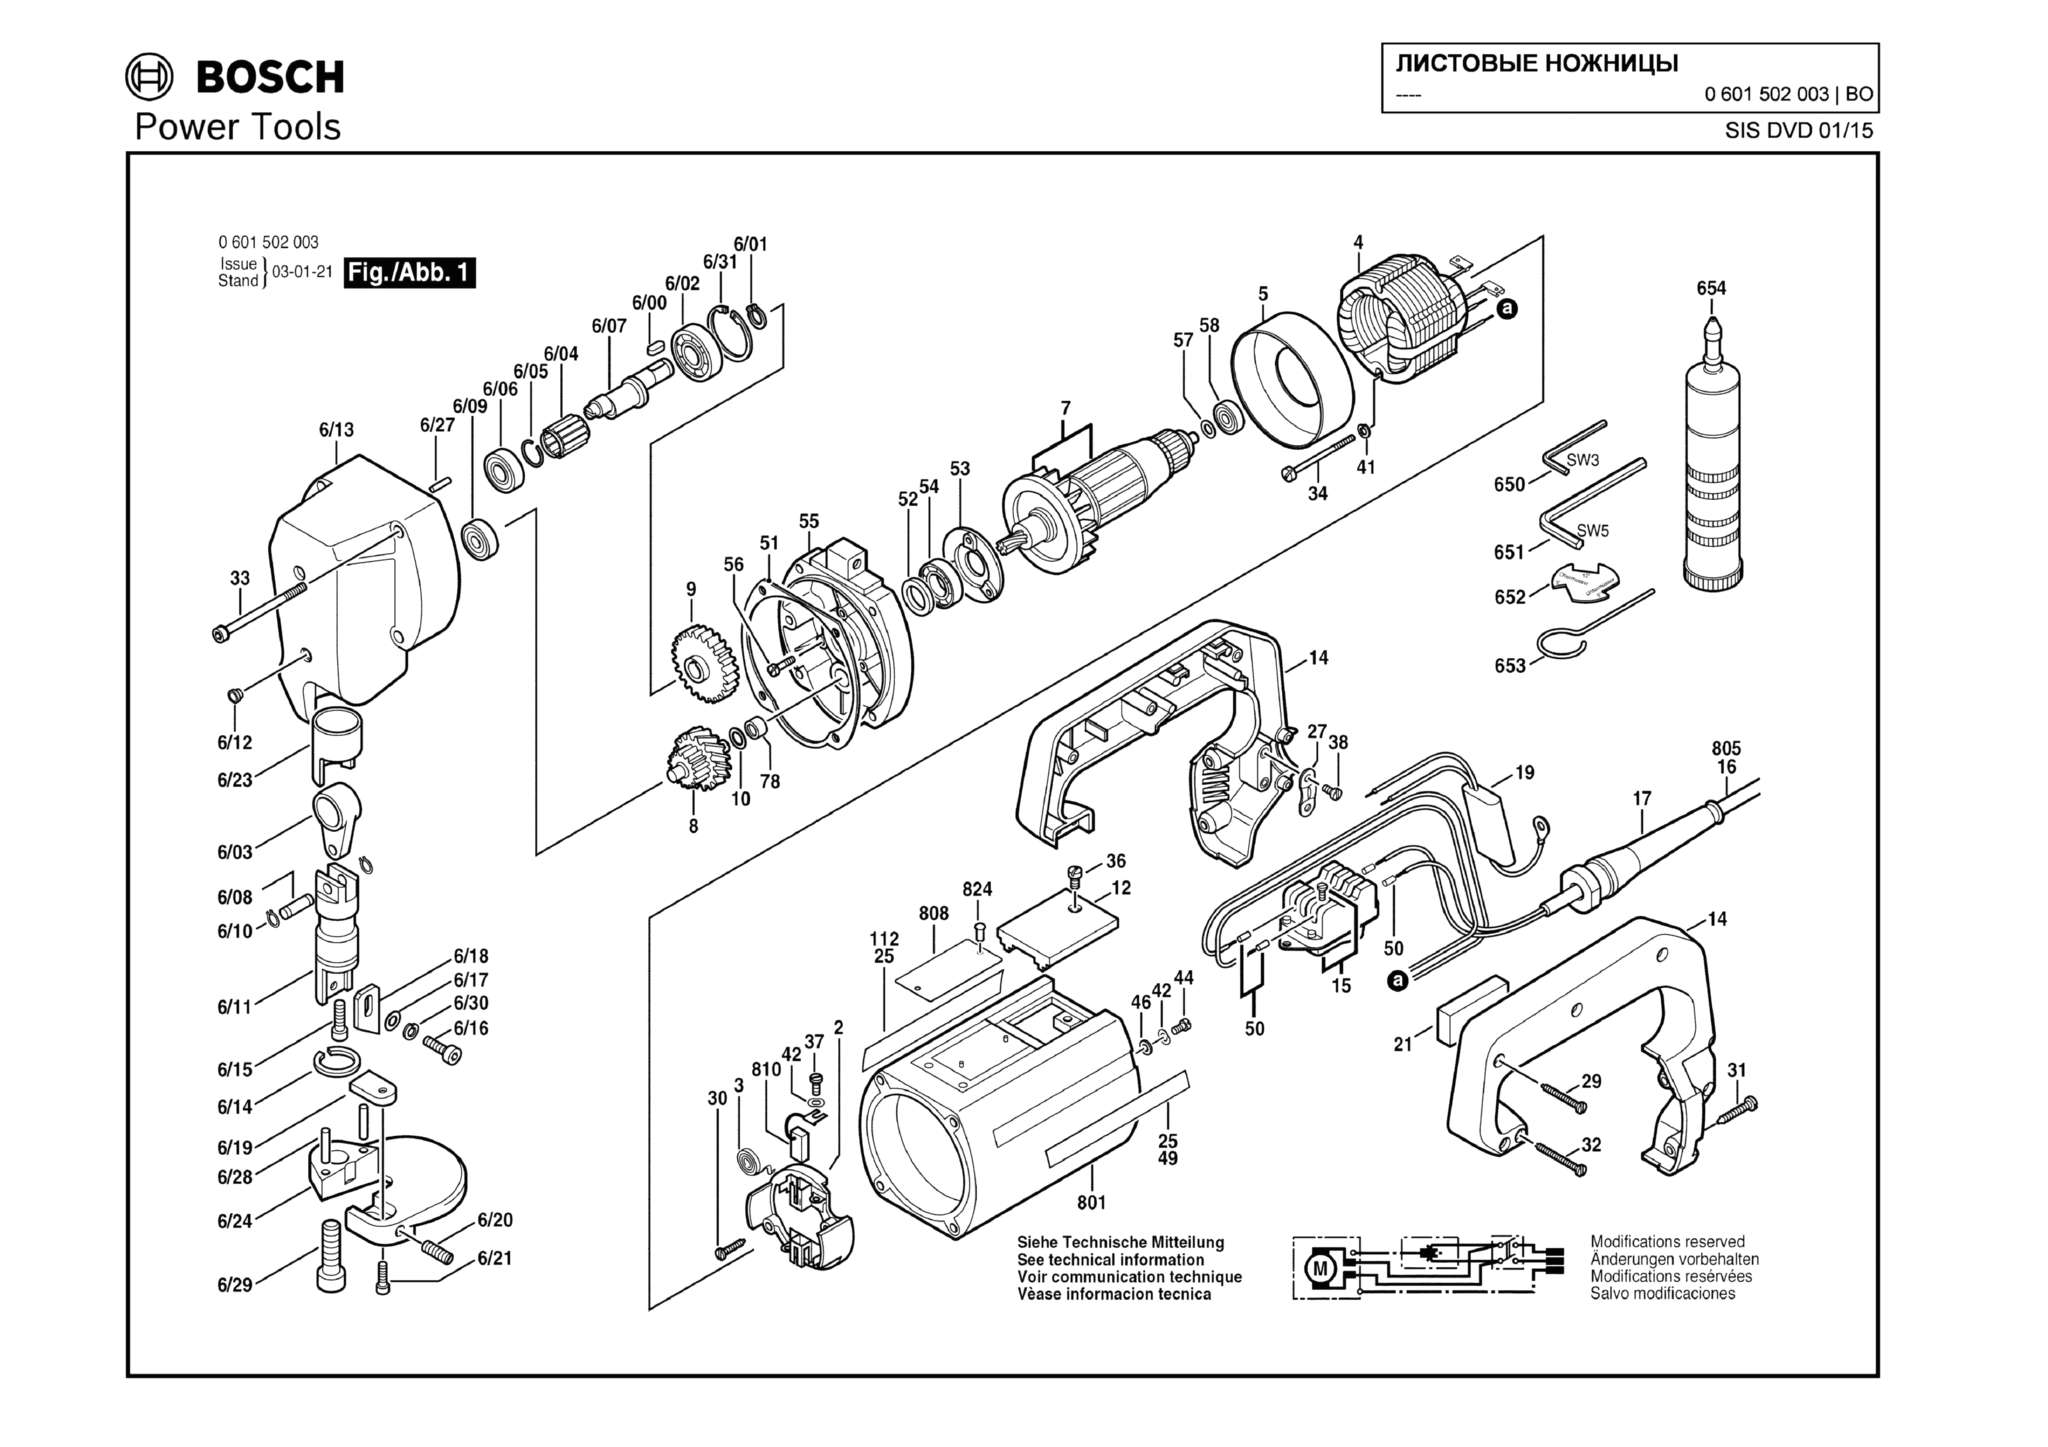 Запчасти, схема и деталировка Bosch (ТИП 0601502003)